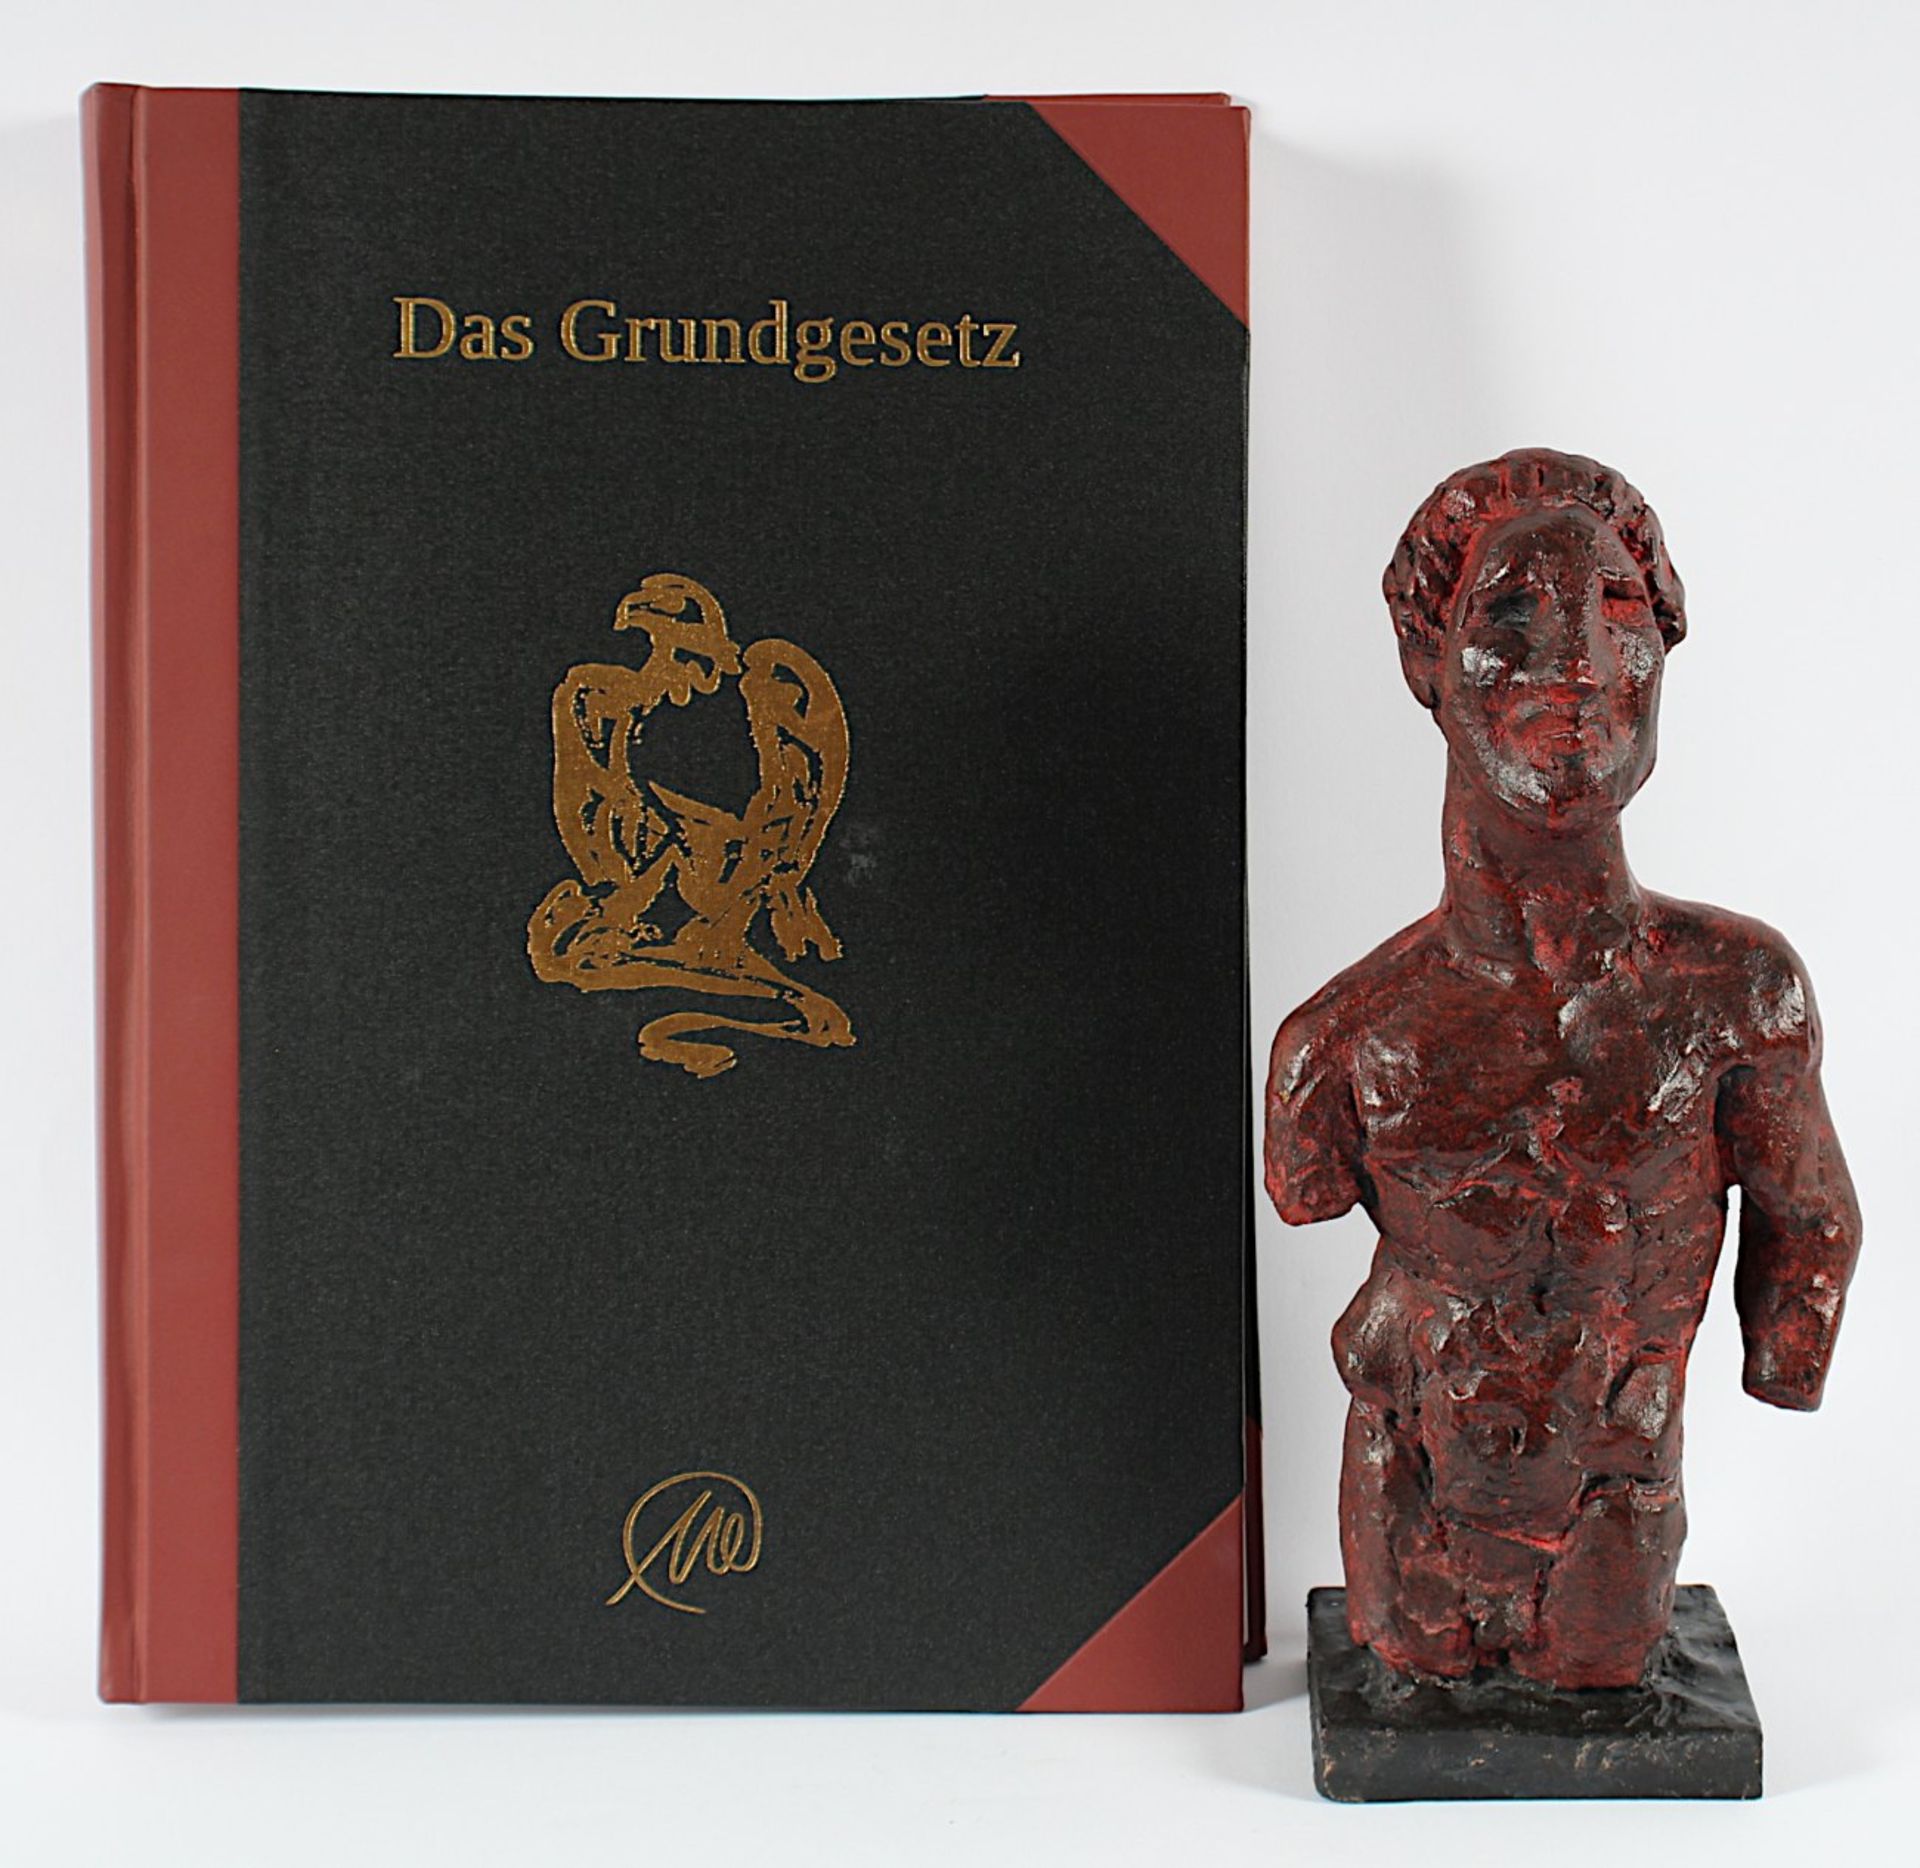 LÜPERTZ, Markus, "Grundgesetz", Bronze, mit leuchtend roter Farbe bemalt/patiniert, verso am